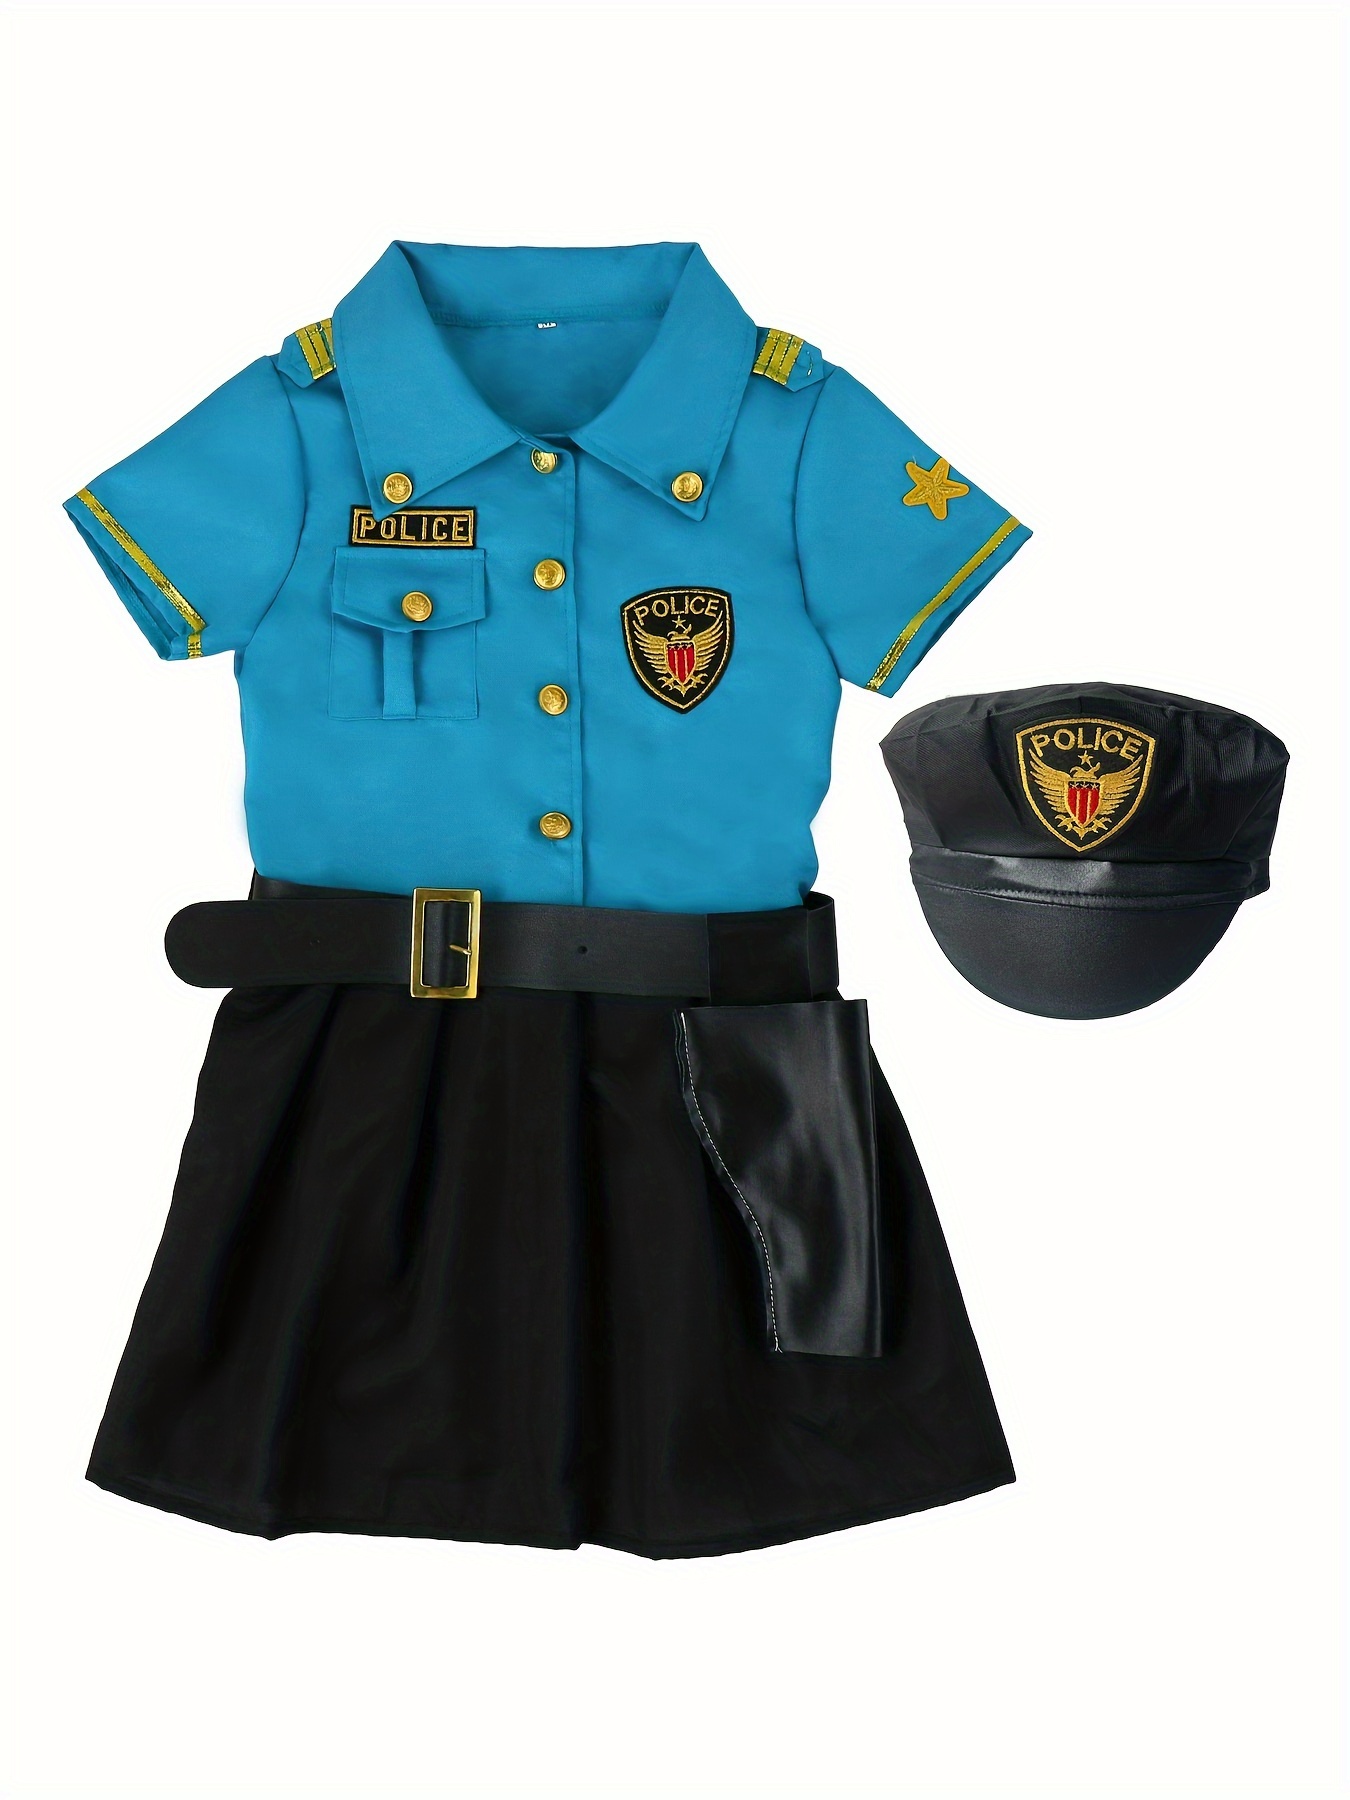 Garçons policiers costumes enfants cosplay pour enfants armée police  uniformes ensemble manches longues combat performance uniformes